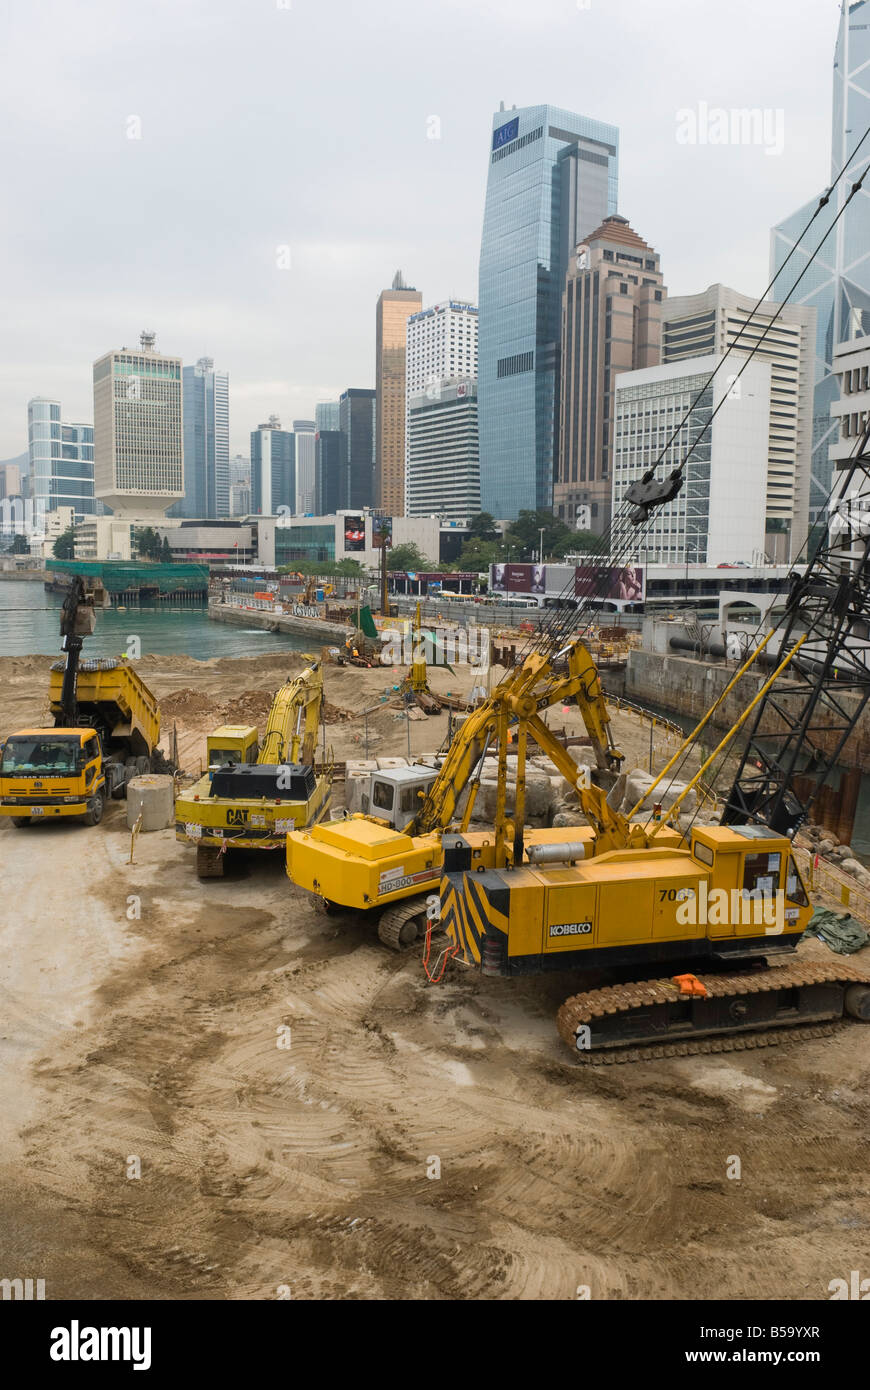 Land reclamation project under way in Central, Hong Kong Island, Hong Kong, China Stock Photo